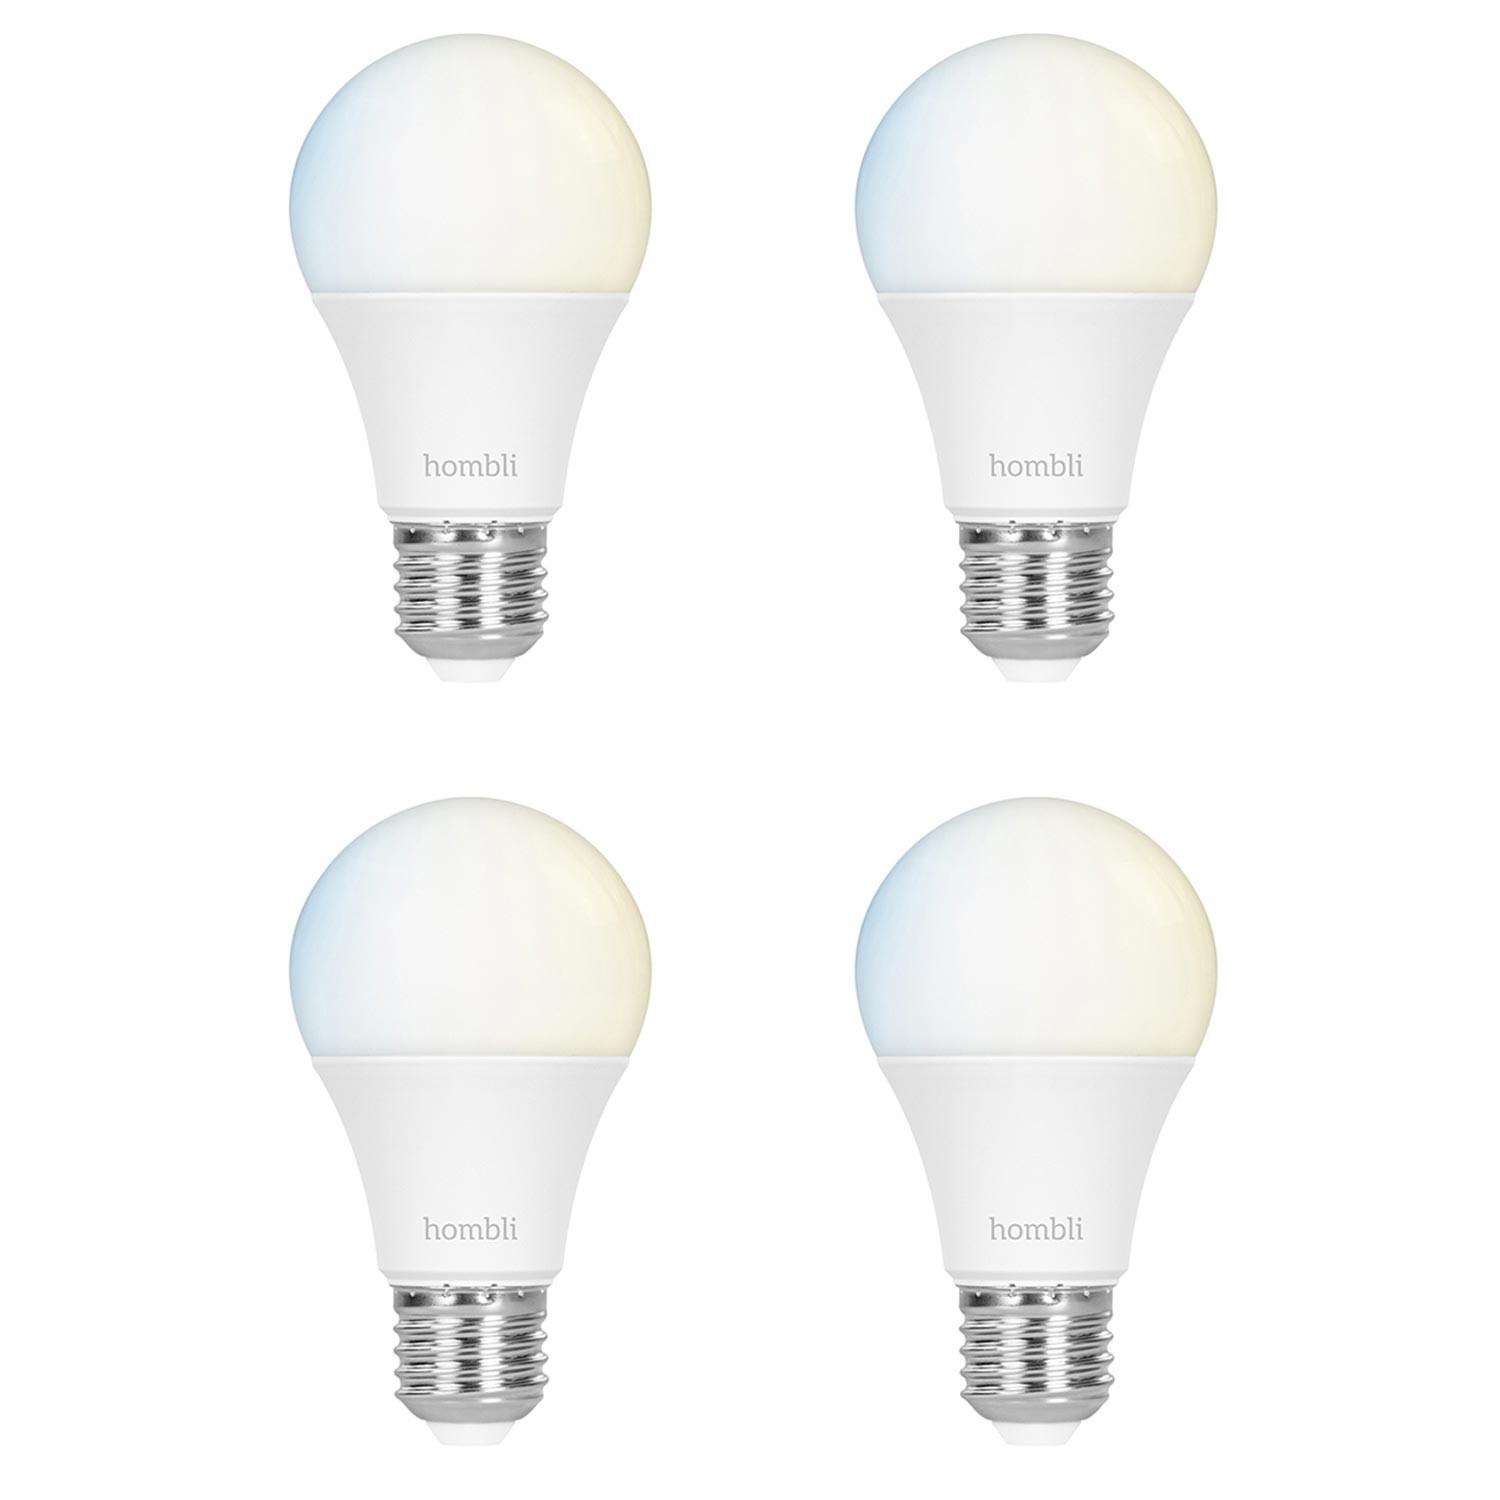 Hombli Smart Bulb E27 White-Lampe 2er-Set + gratis Smart Bulb E27 White 2er-Set